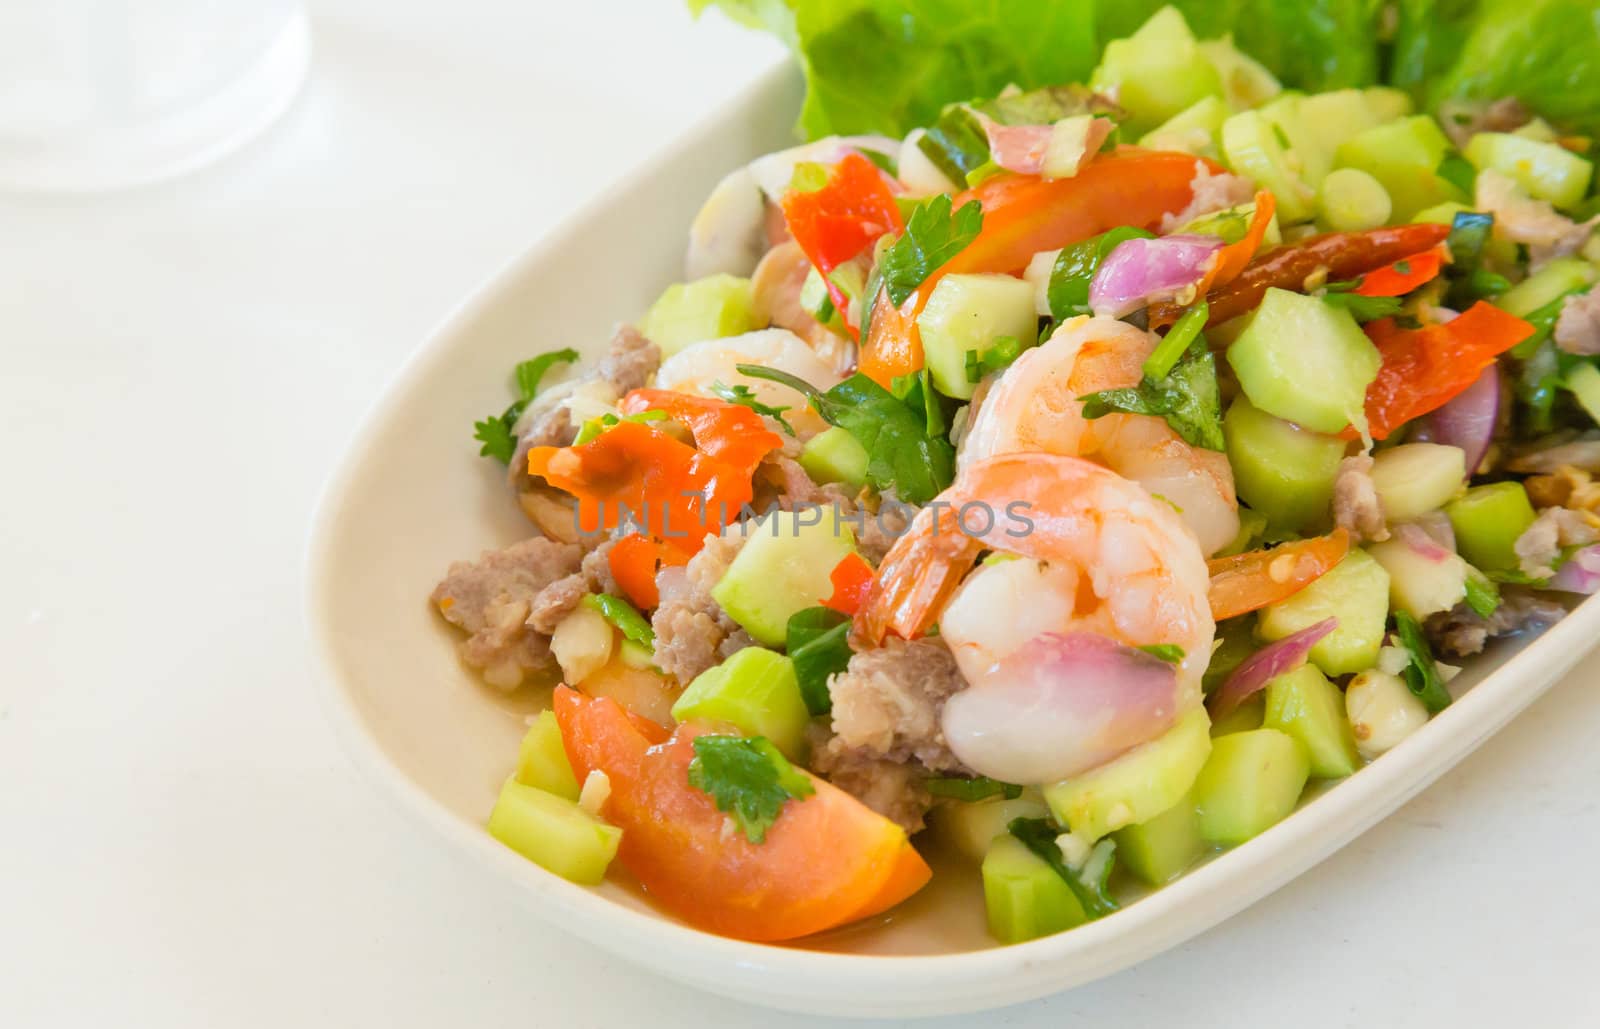 thai food kale with prawn salad on white table